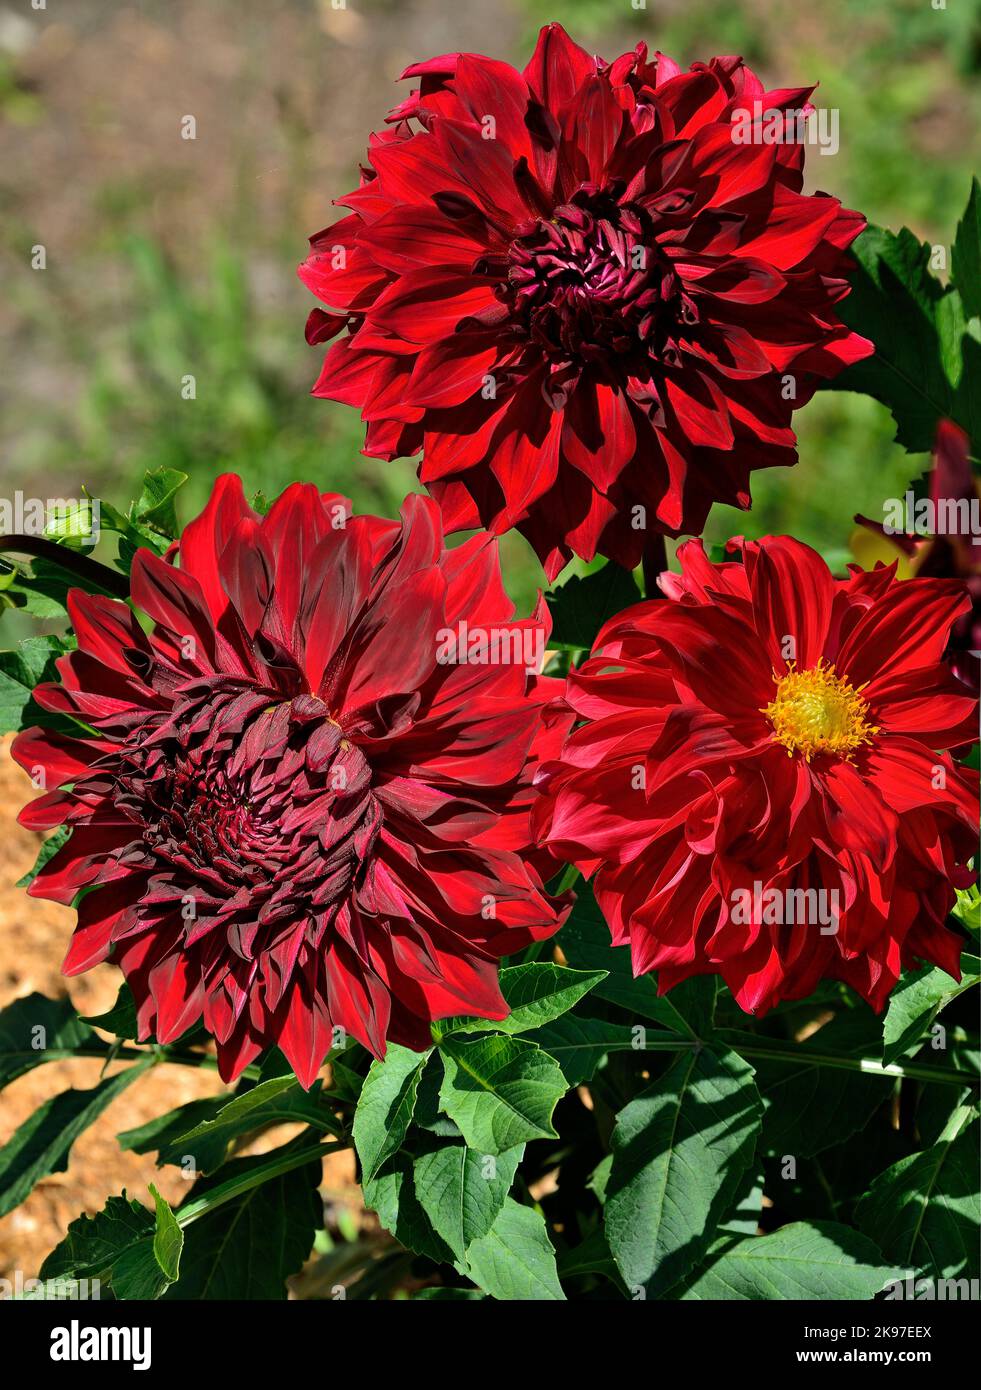 Tres flores Dahlia de color rojo oscuro, variedad Spartacus de cerca sobre el fondo borroso del jardín. Grandes cabezas decorativas de dahlias en jardín de otoño, macro. Magni Foto de stock